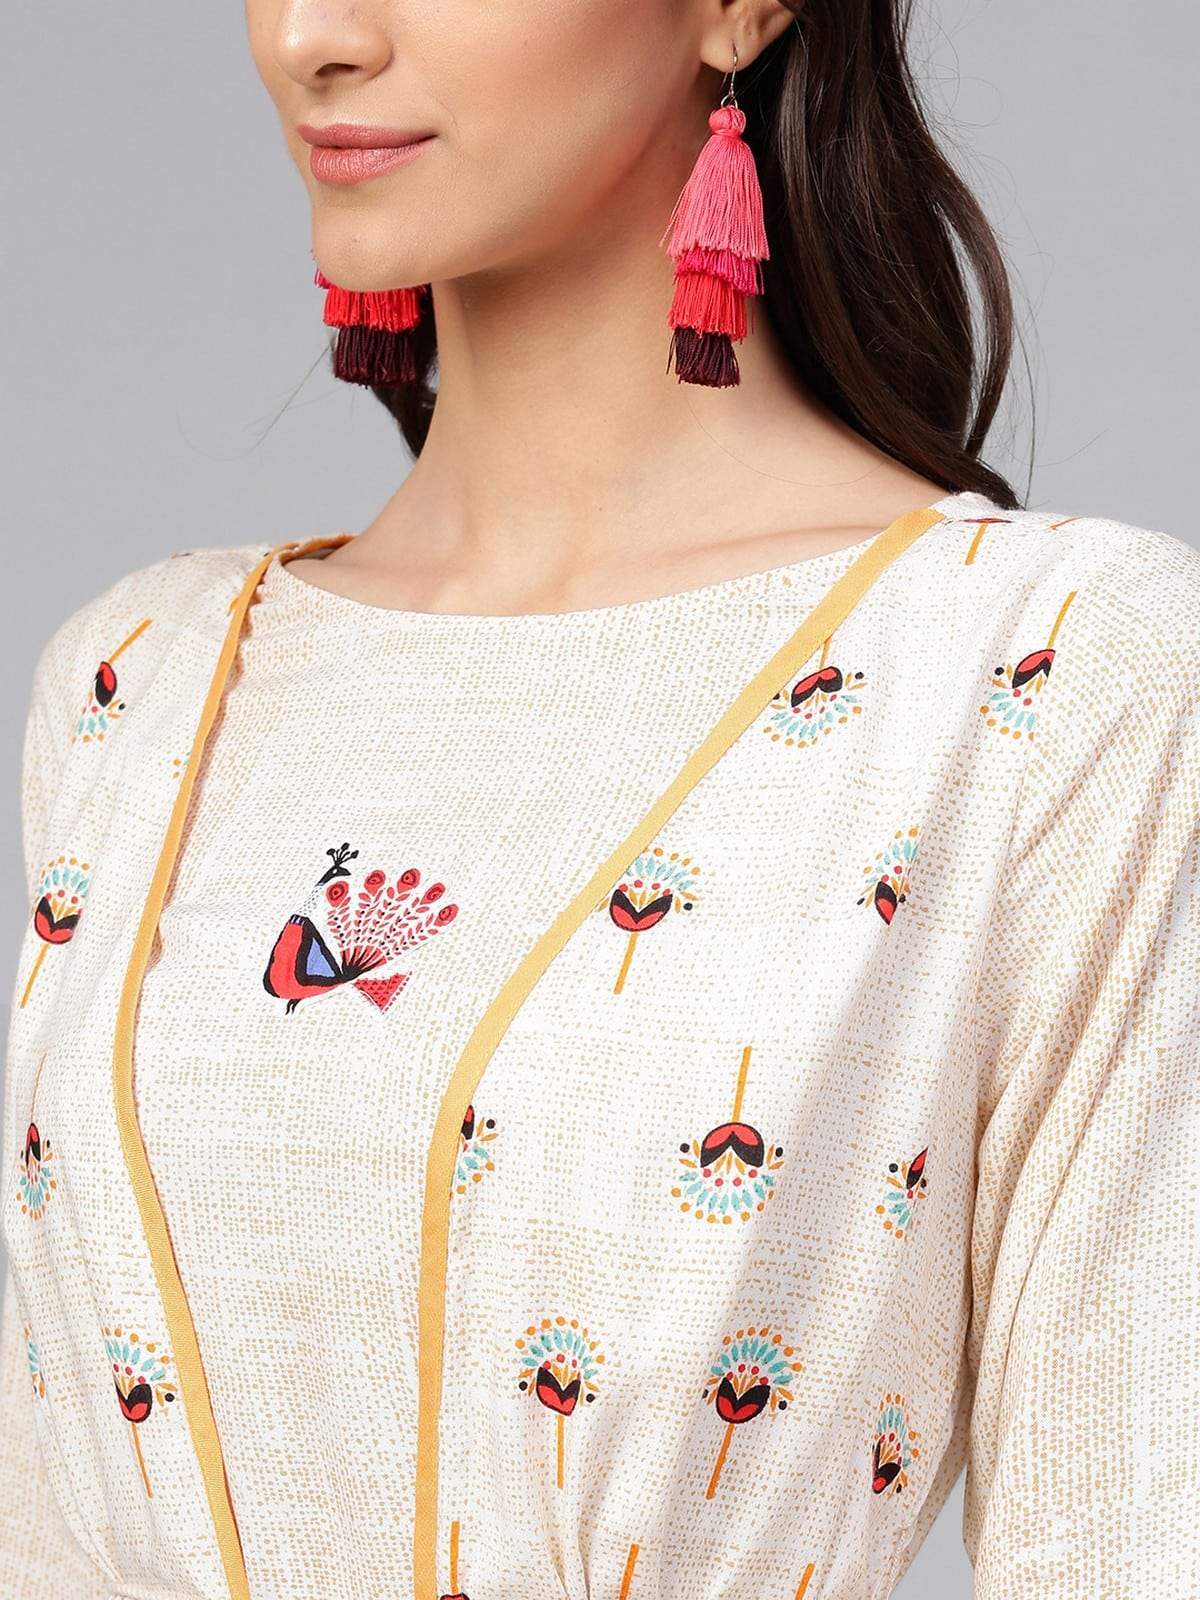 Women's Peacock Inspired Jacket Style Kurta - Pannkh